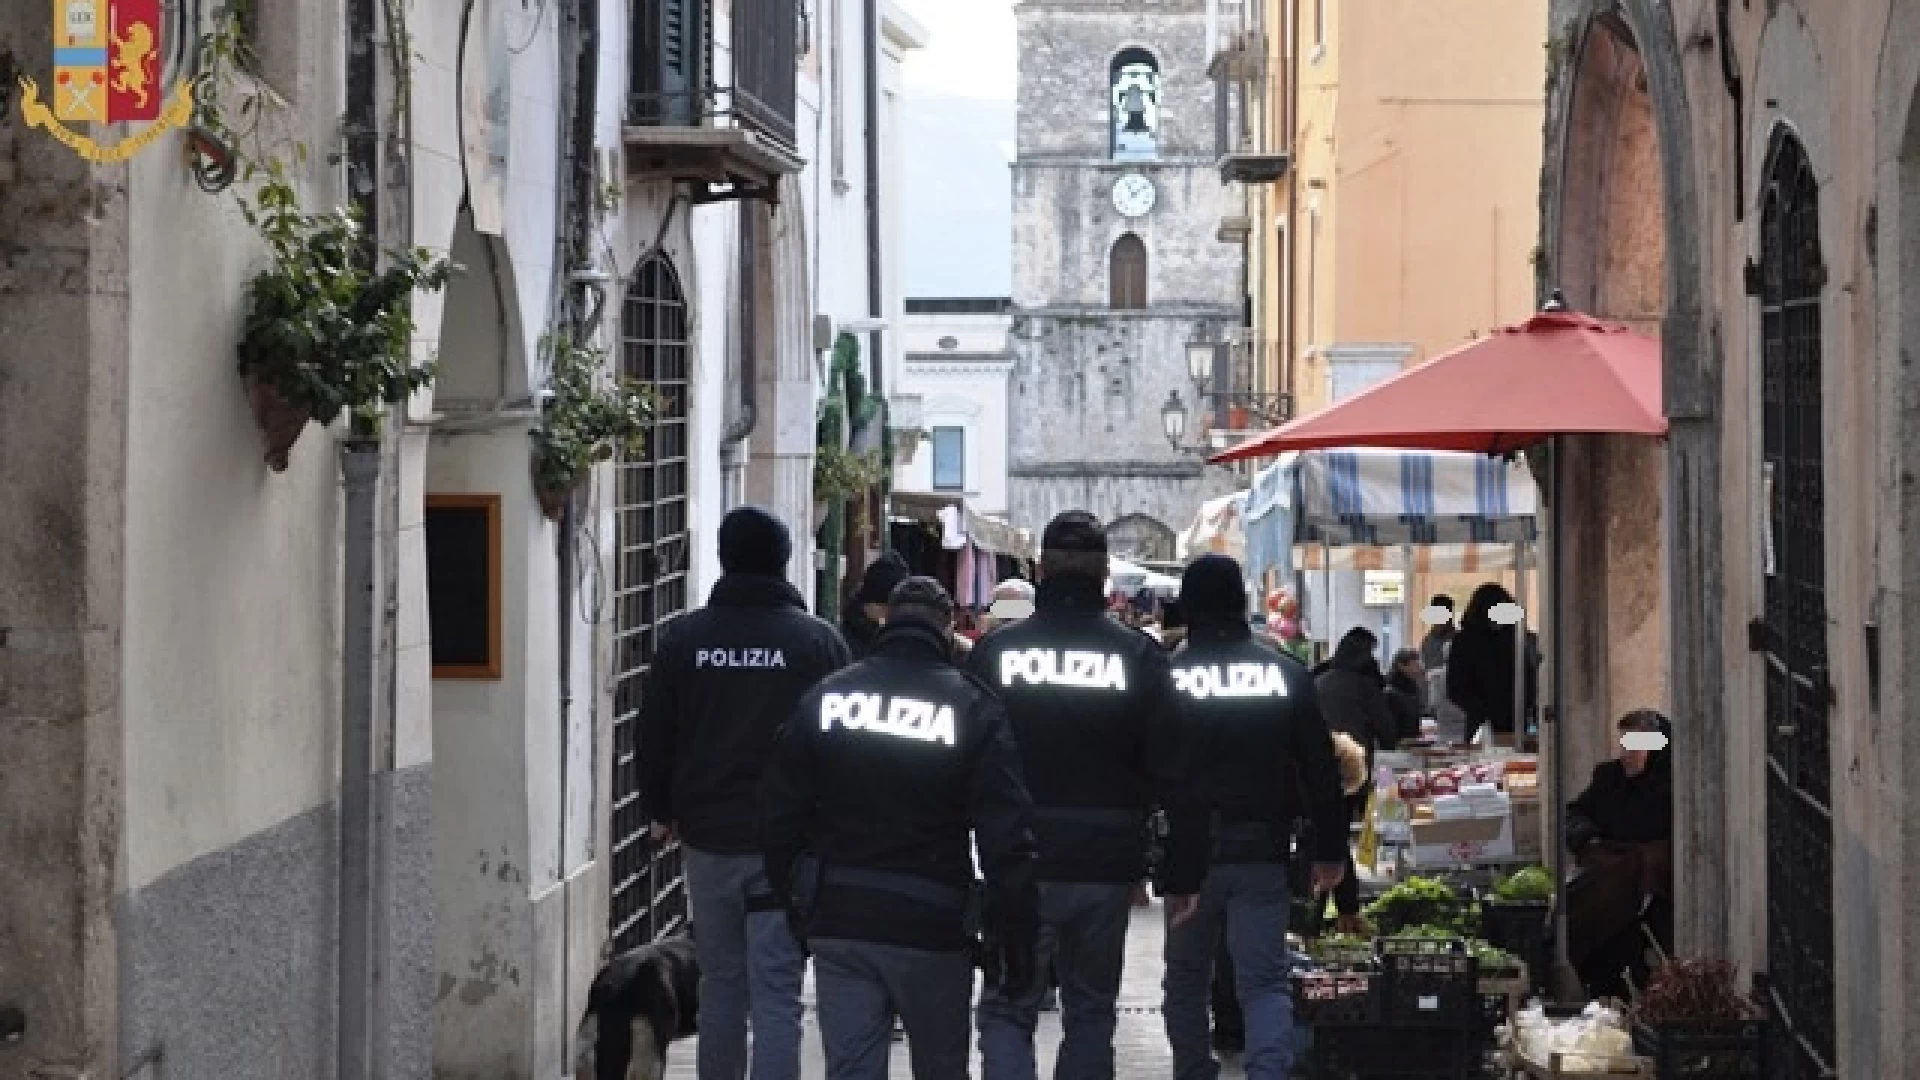 La Polizia di Stato controlla i locali del centro storico in occasione della Fiera di San Pietro e Paolo.